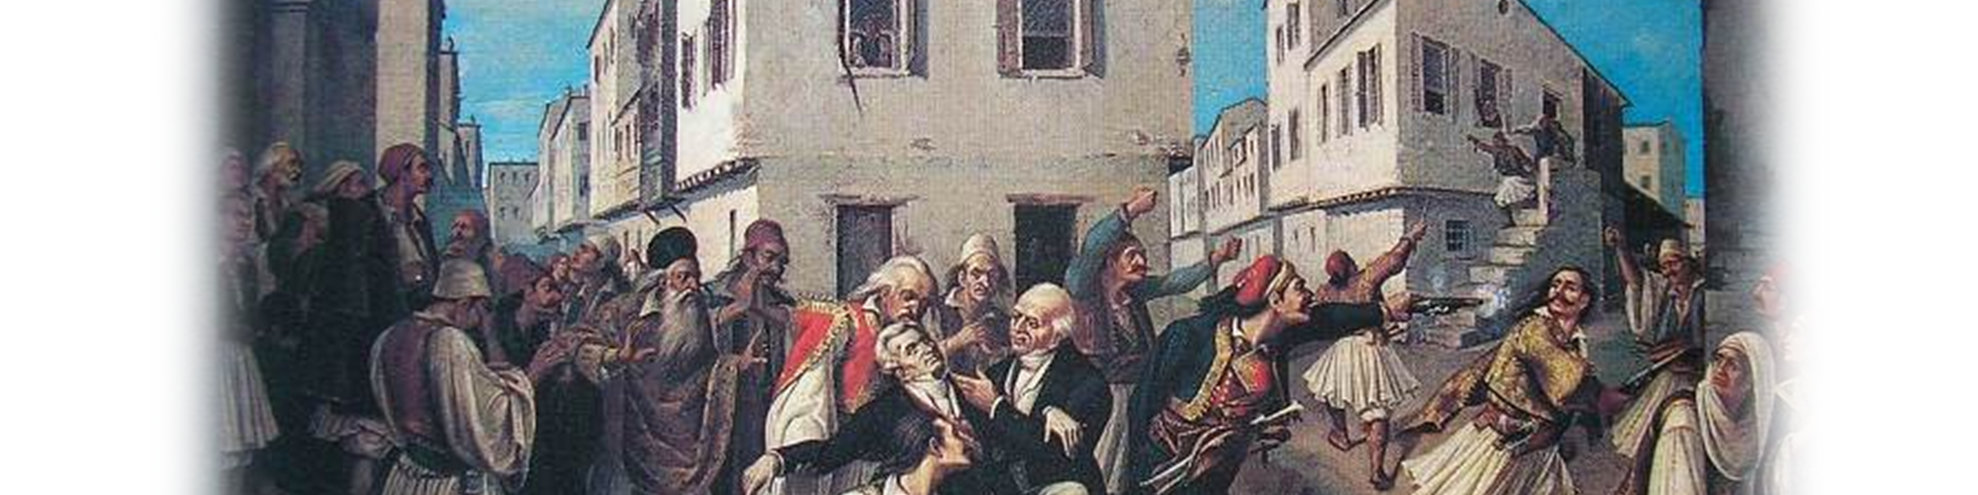 θέση του και εγκαταστάθηκε στην Ελβετία. Το 1827 η Γ' Εθνοσυνέλευση της Τροιζήνας τον εξέλεξε Κυβερνήτη της Ελλάδας και έφτασε στο Ναύπλιο το 1828.